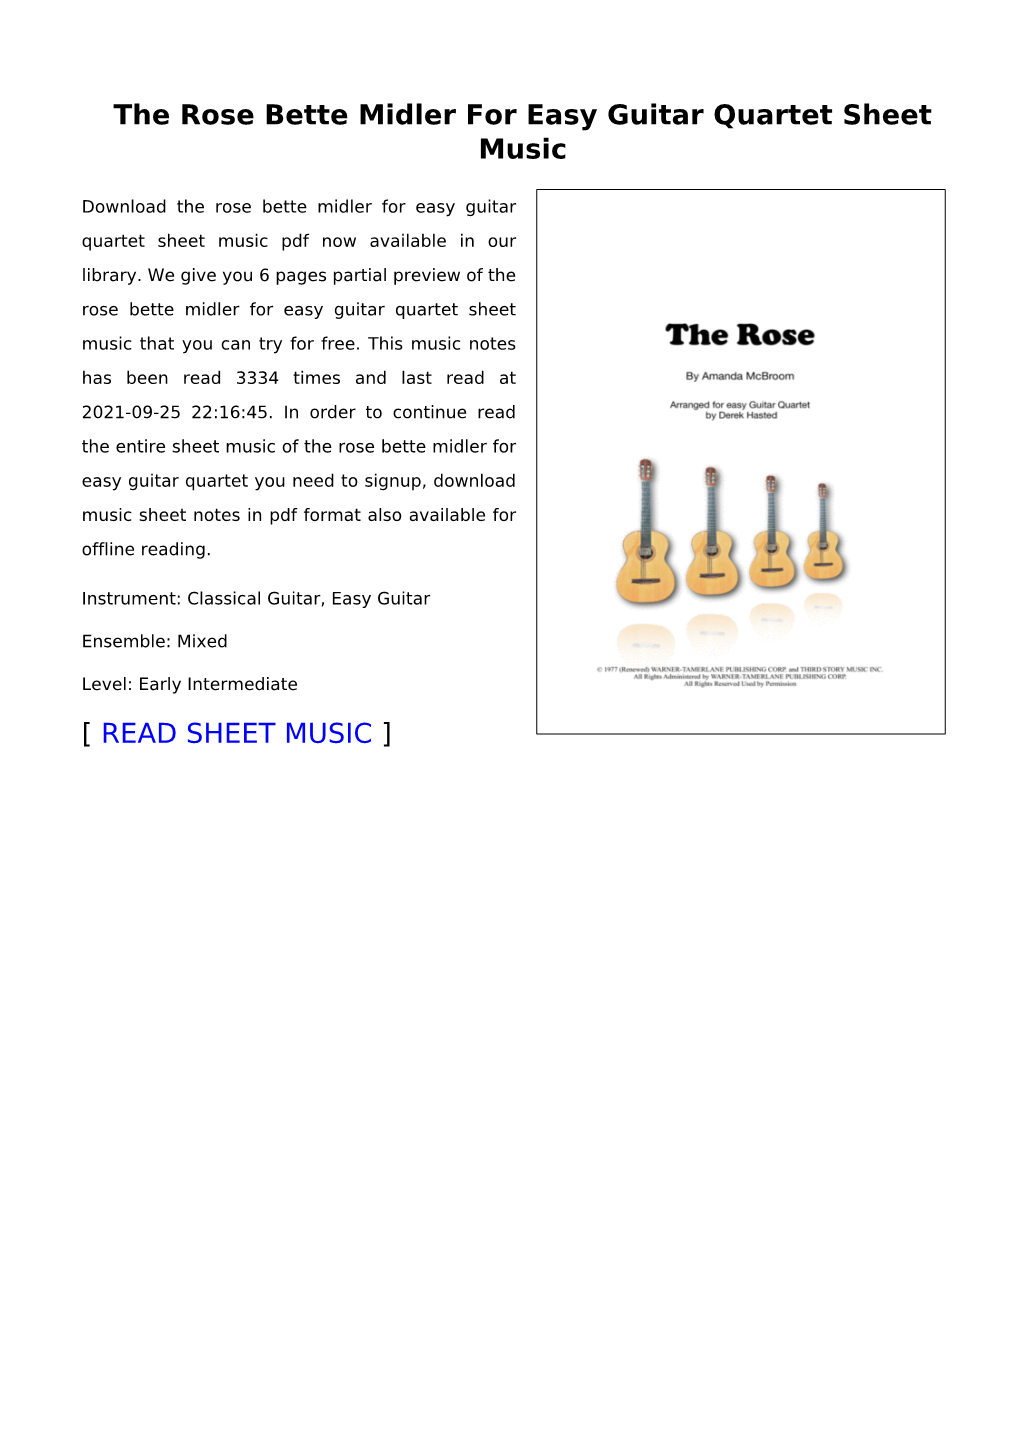 The Rose Bette Midler for Easy Guitar Quartet Sheet Music